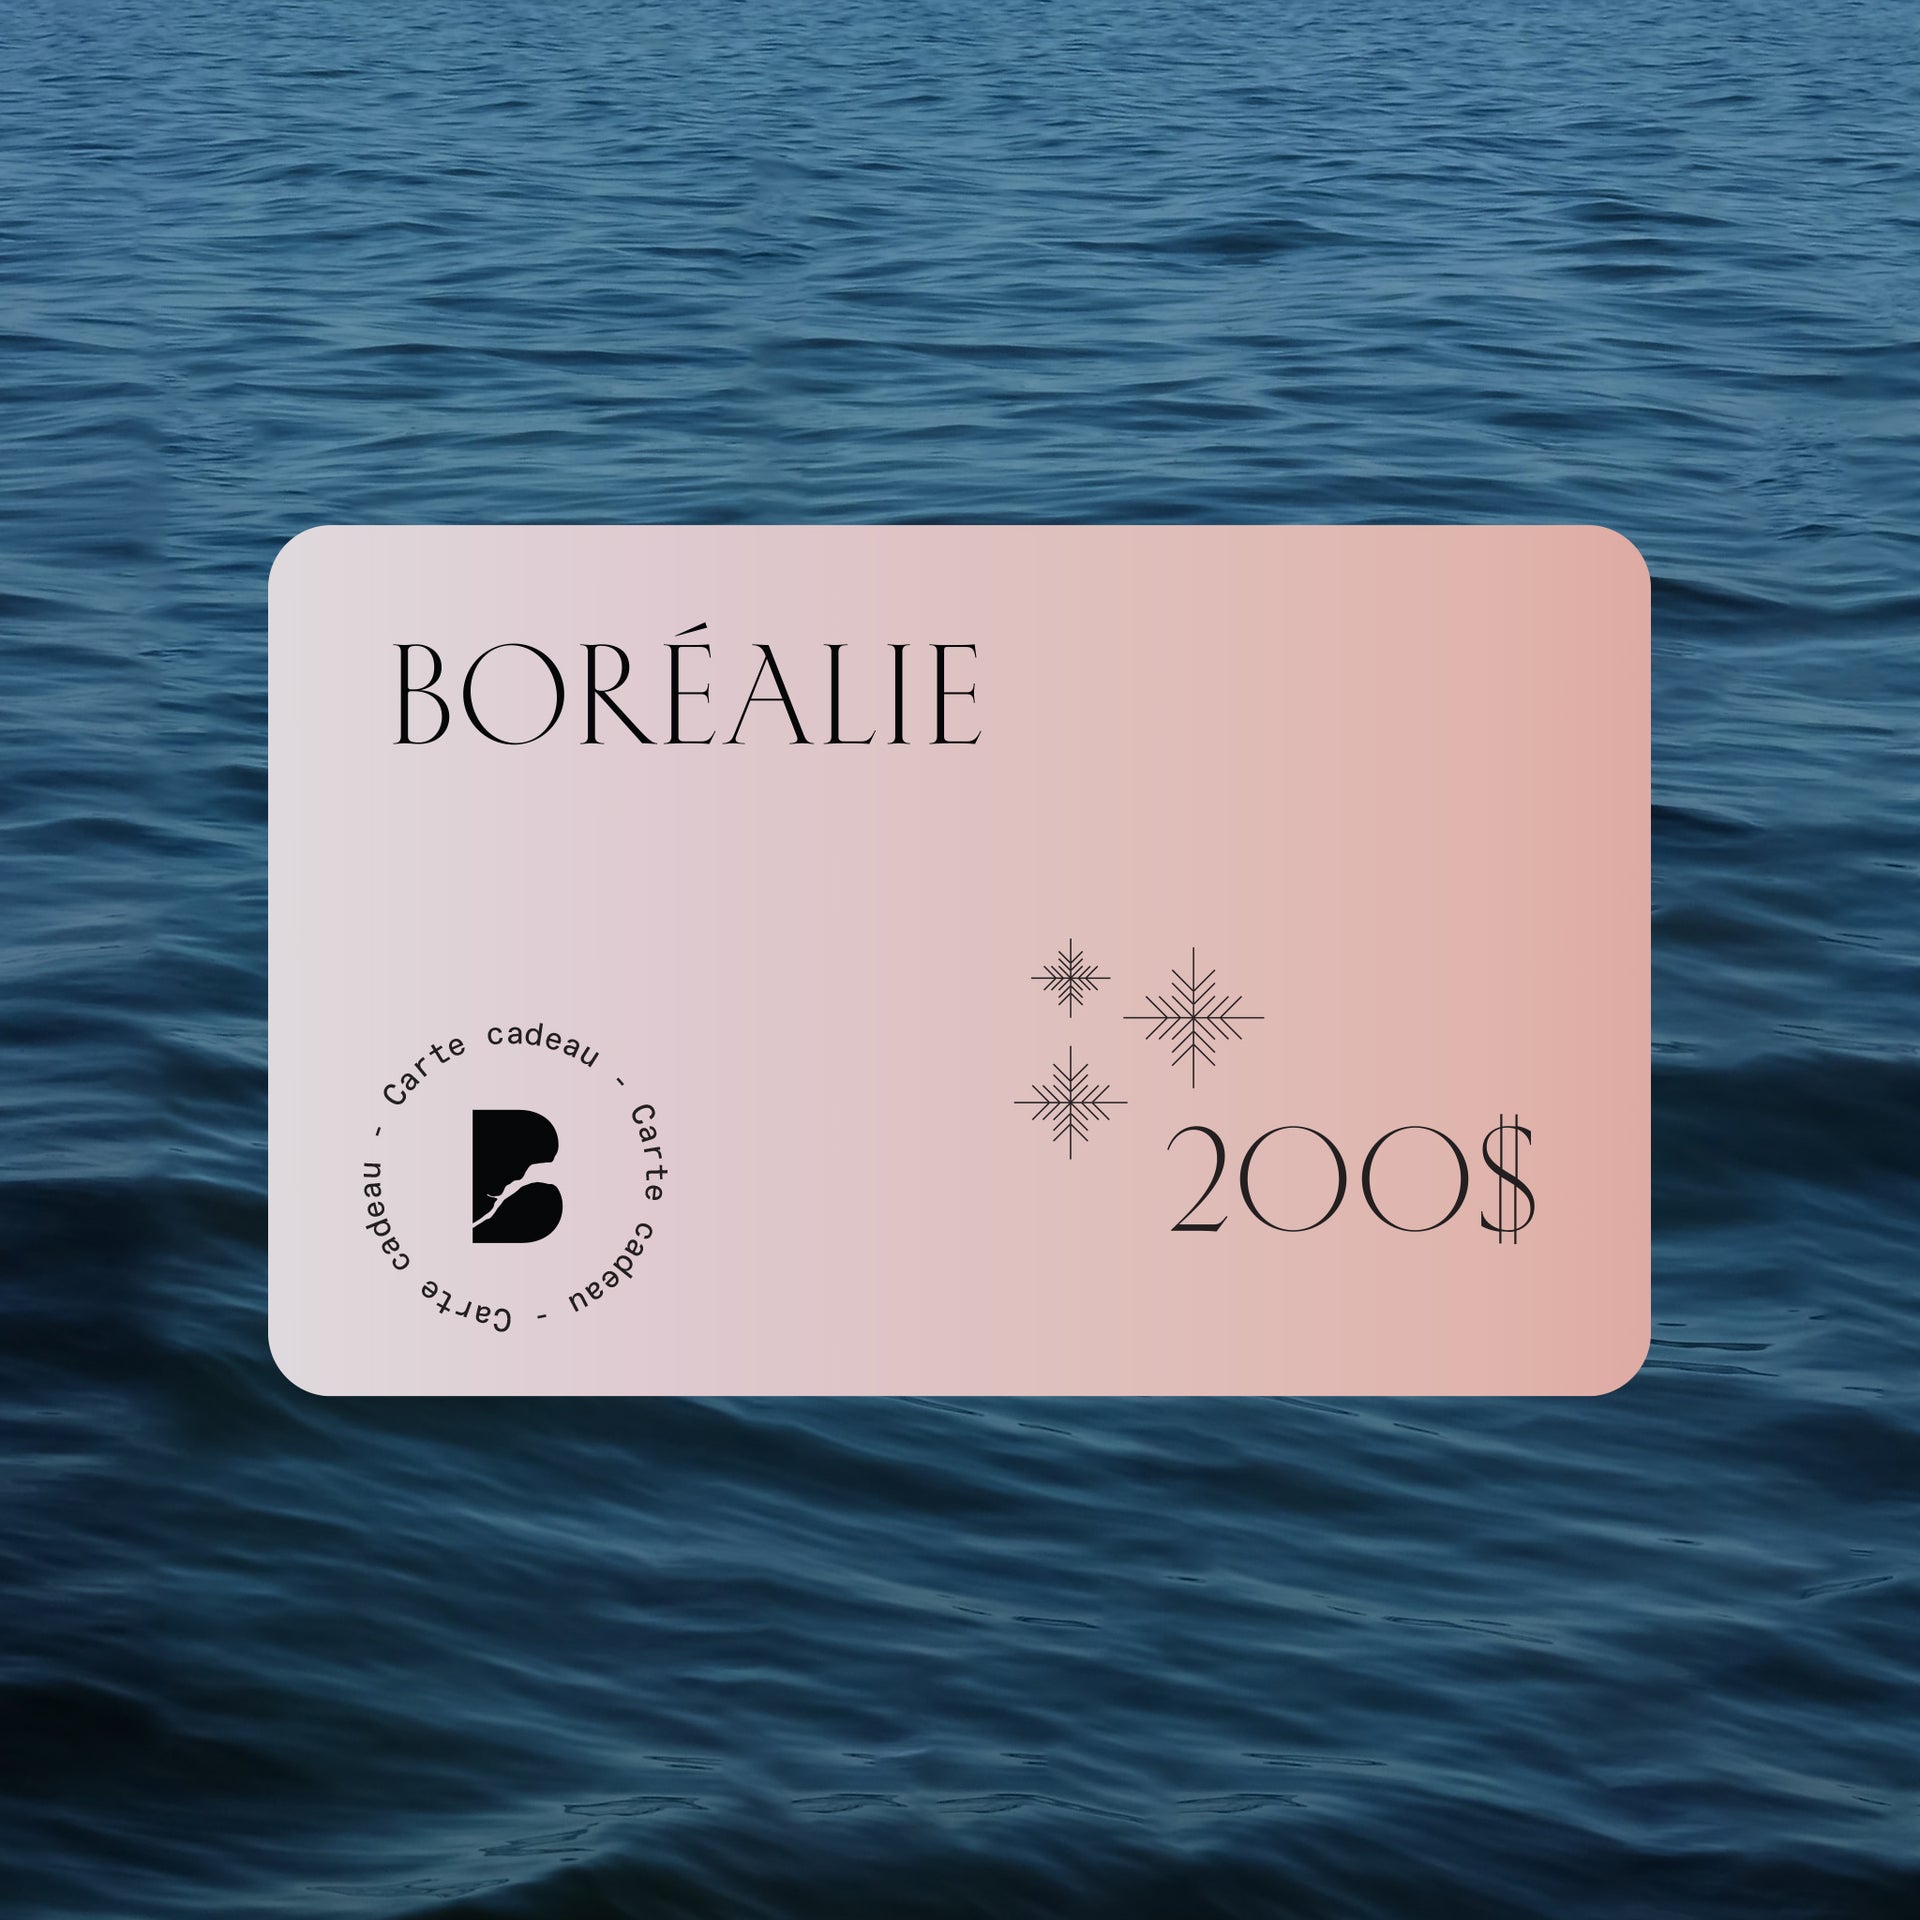 Boréalie's gift card